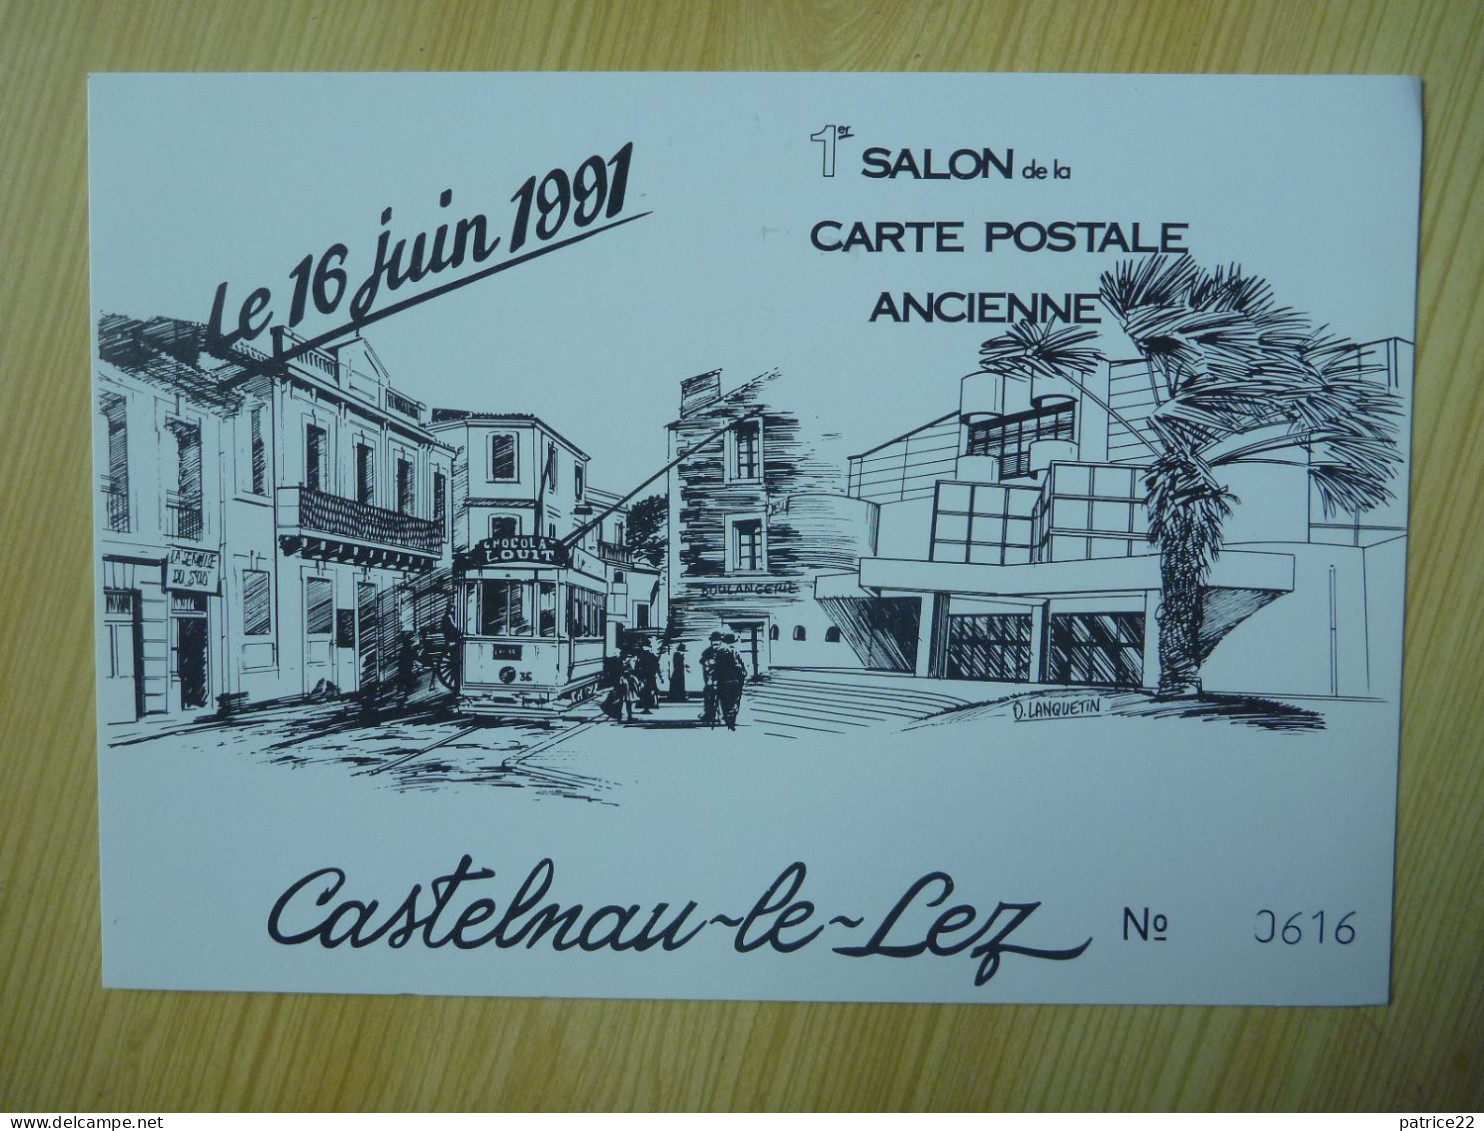 CPSM Inédite CASTELNAU LE LEZ 1991 TRAMWAY CHOCOLAT LOUIT Illustration Lanquetin 1er Salon Carte Postale Ancienne - Castelnau Le Lez